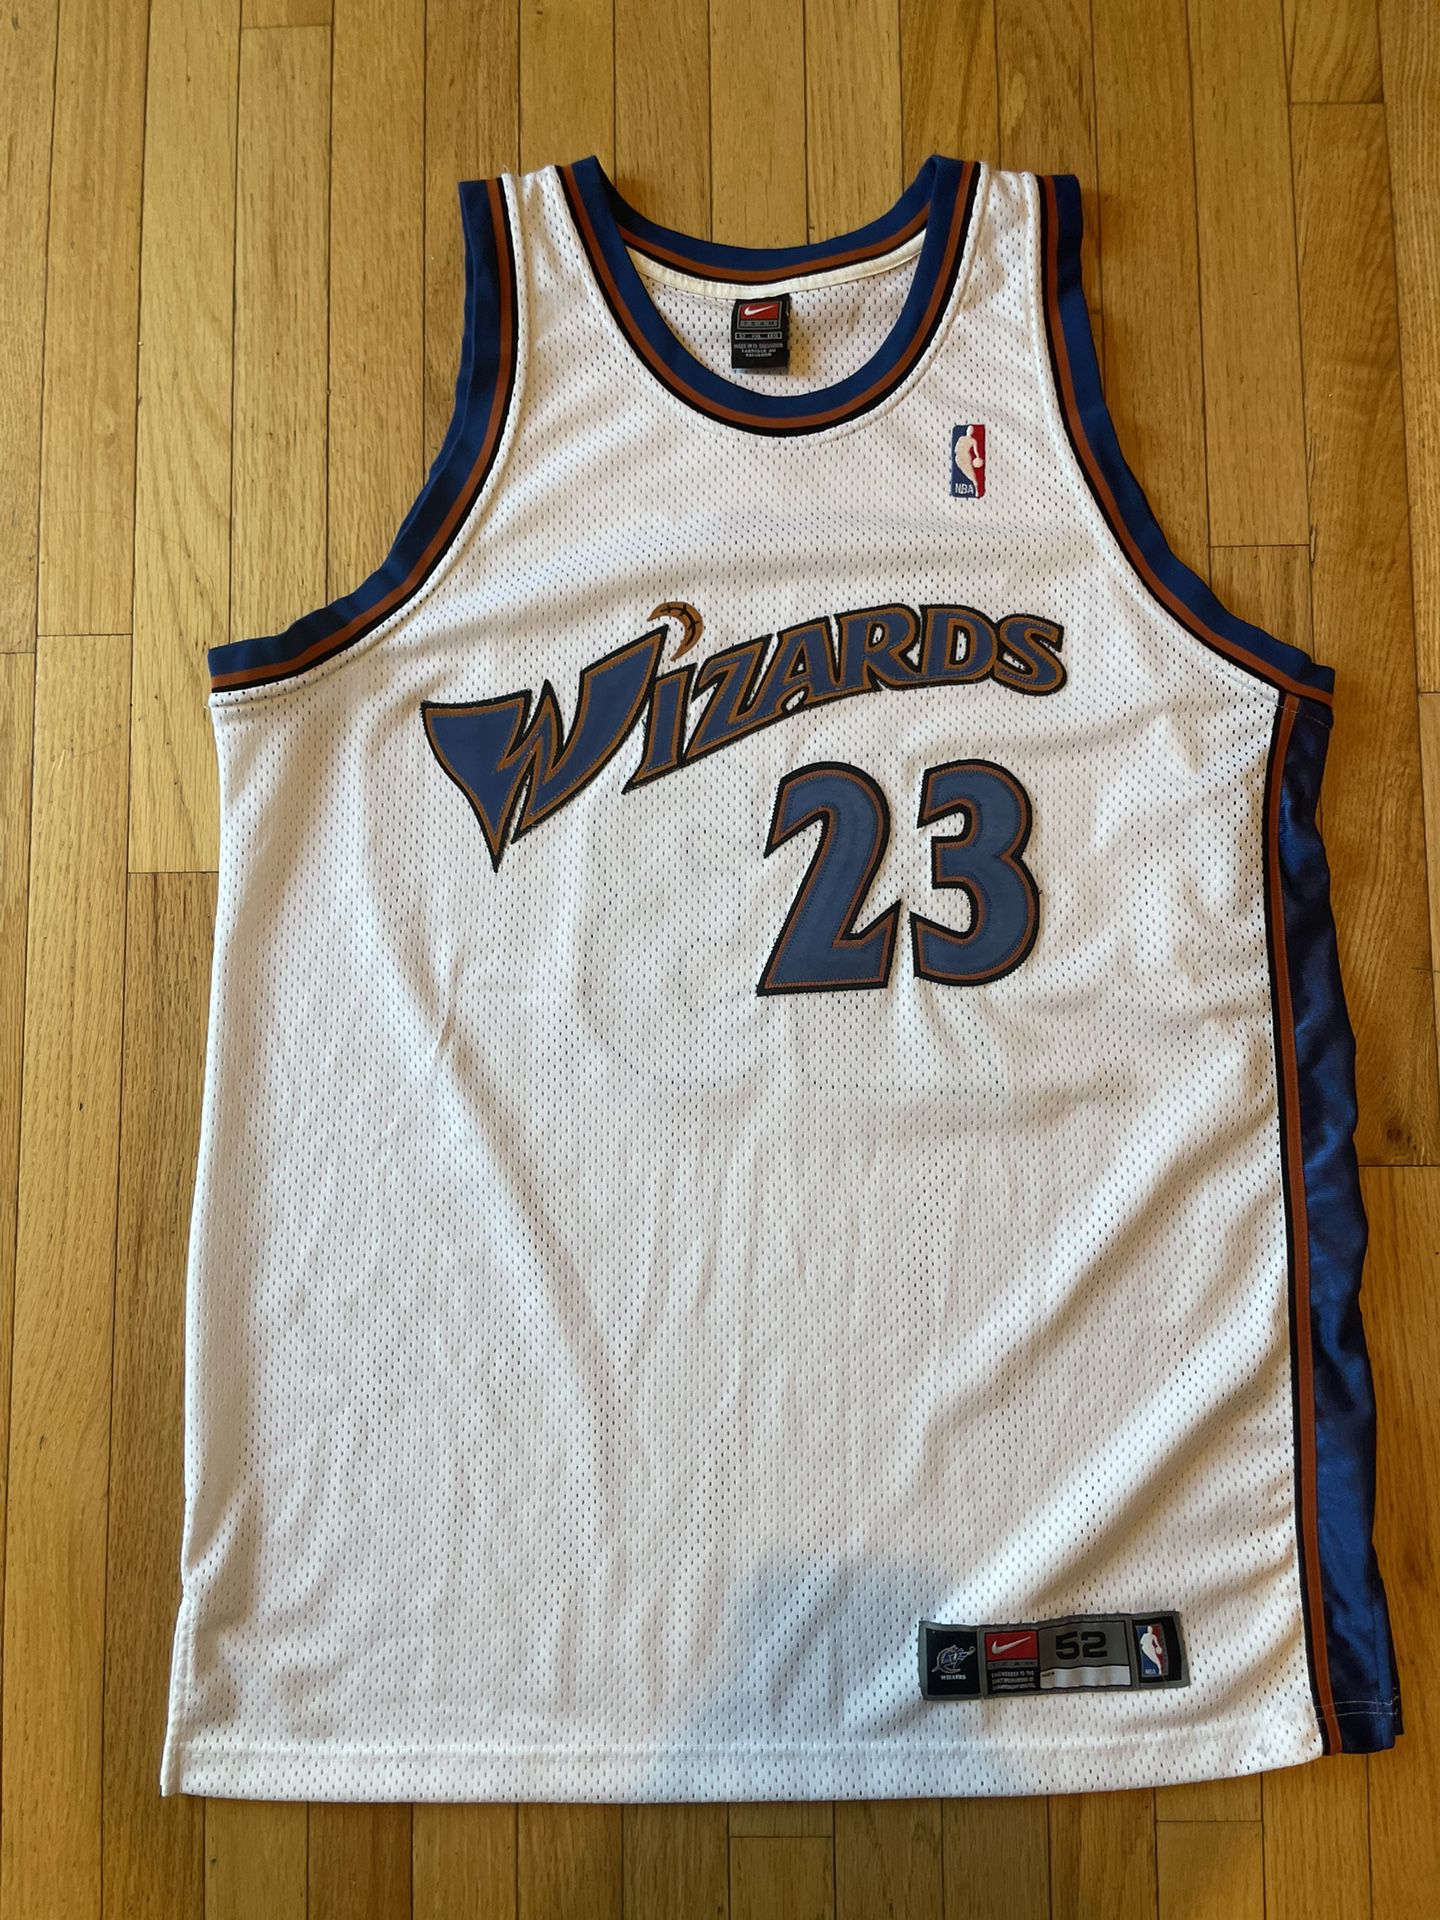 Washington Bullets NBA Fan Jerseys for sale